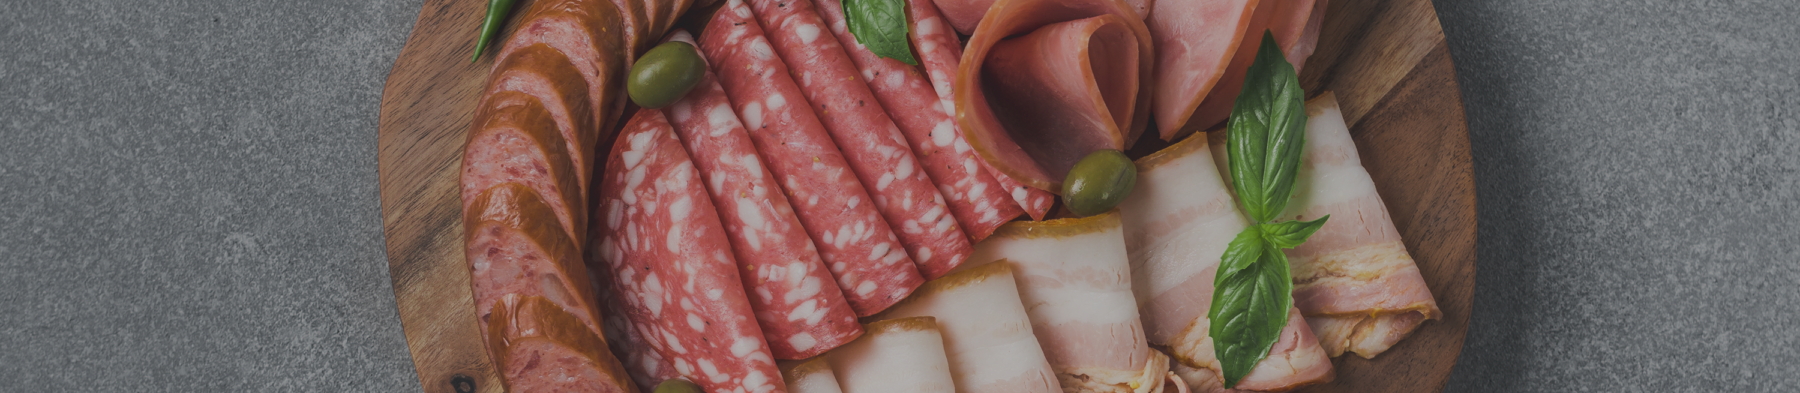 Αλλαντικά και Προϊόντα Επεξεργασίας Κρέατος – Νοστιμιές με ιστορία χιλιάδων χρόνων